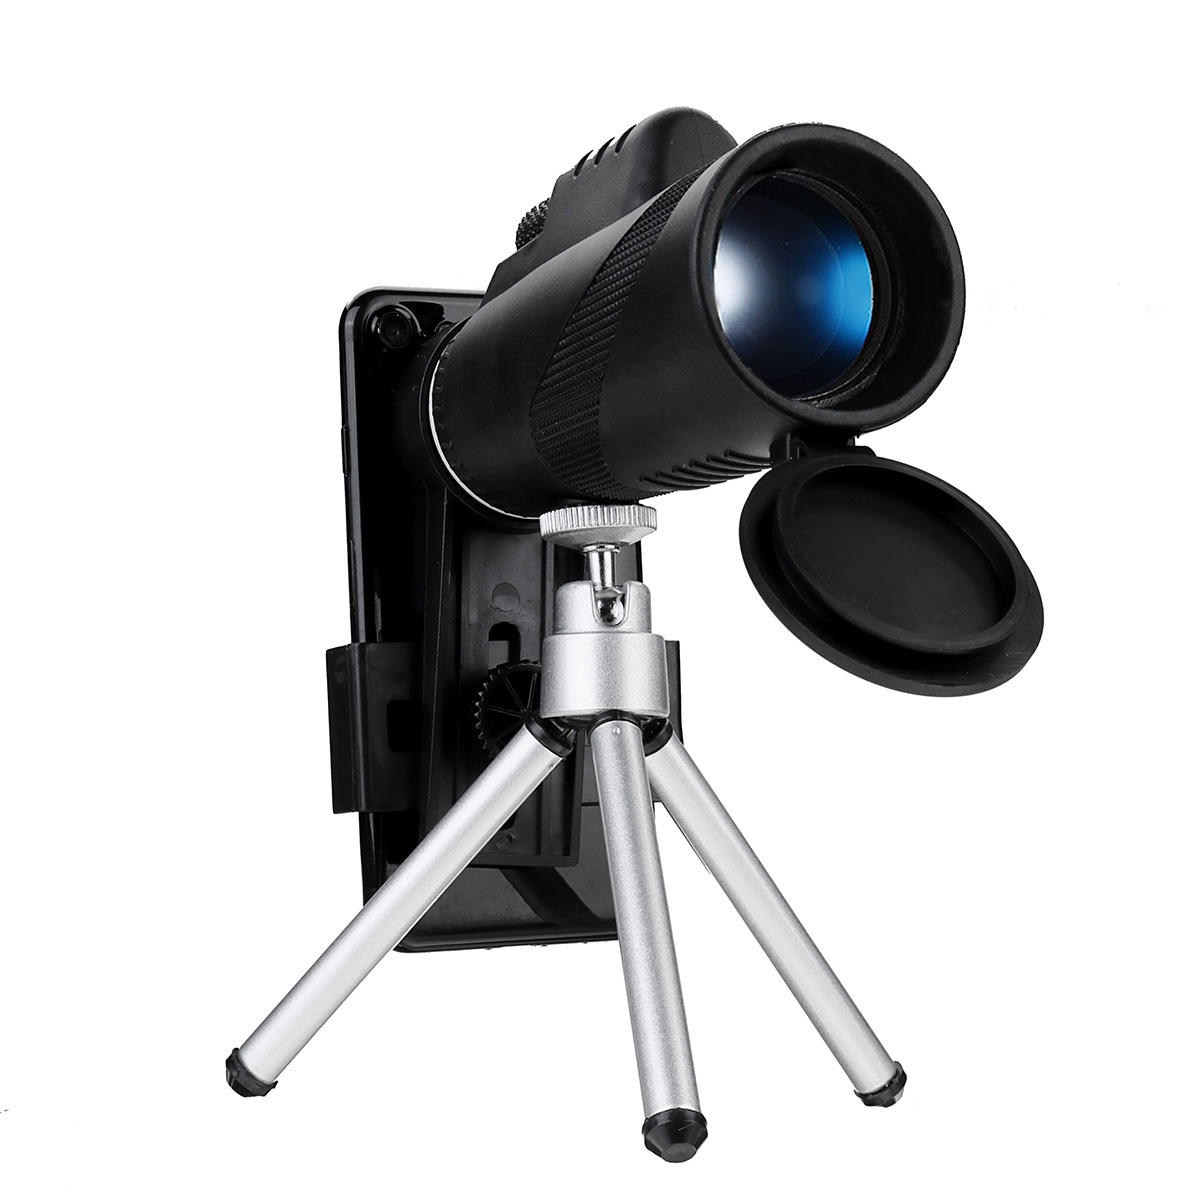 IPRee® 40X60 Monocular HD Telescopio óptico de visión nocturna con clip para teléfono trípode al aire libre cámping Viaje